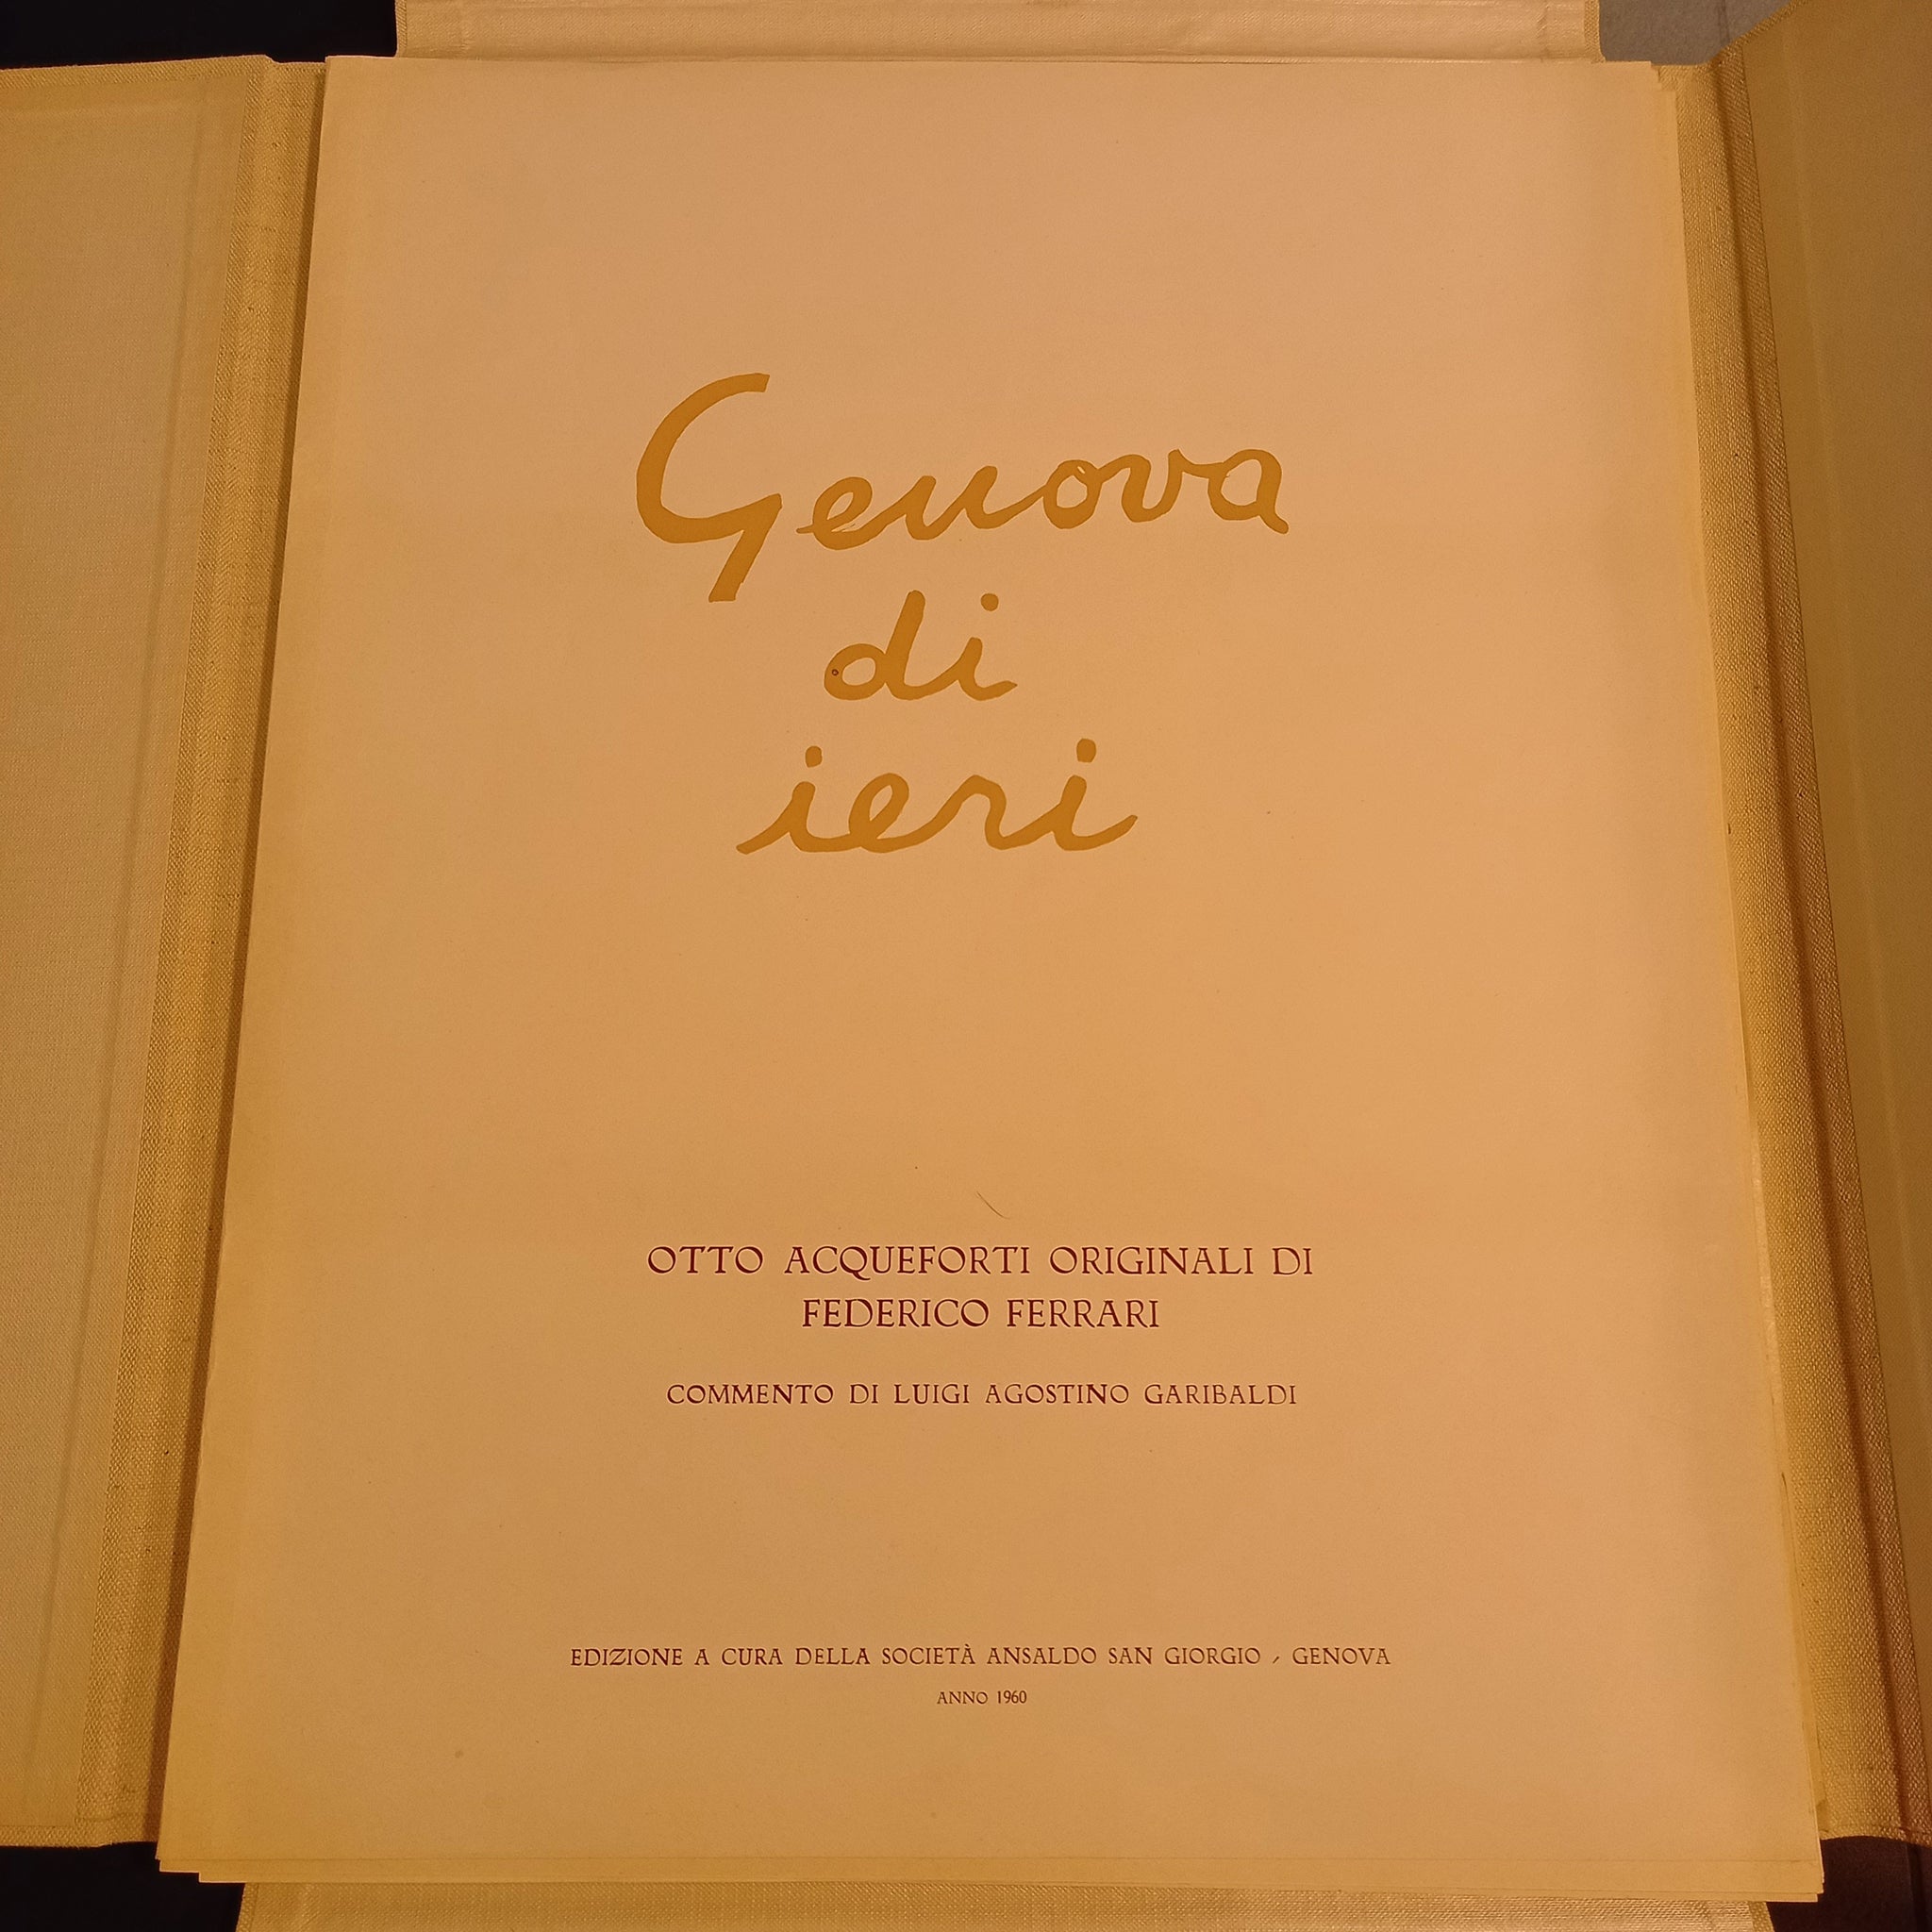 Genova di ieri. Otto acqueforti originali di Federico Ferrari.